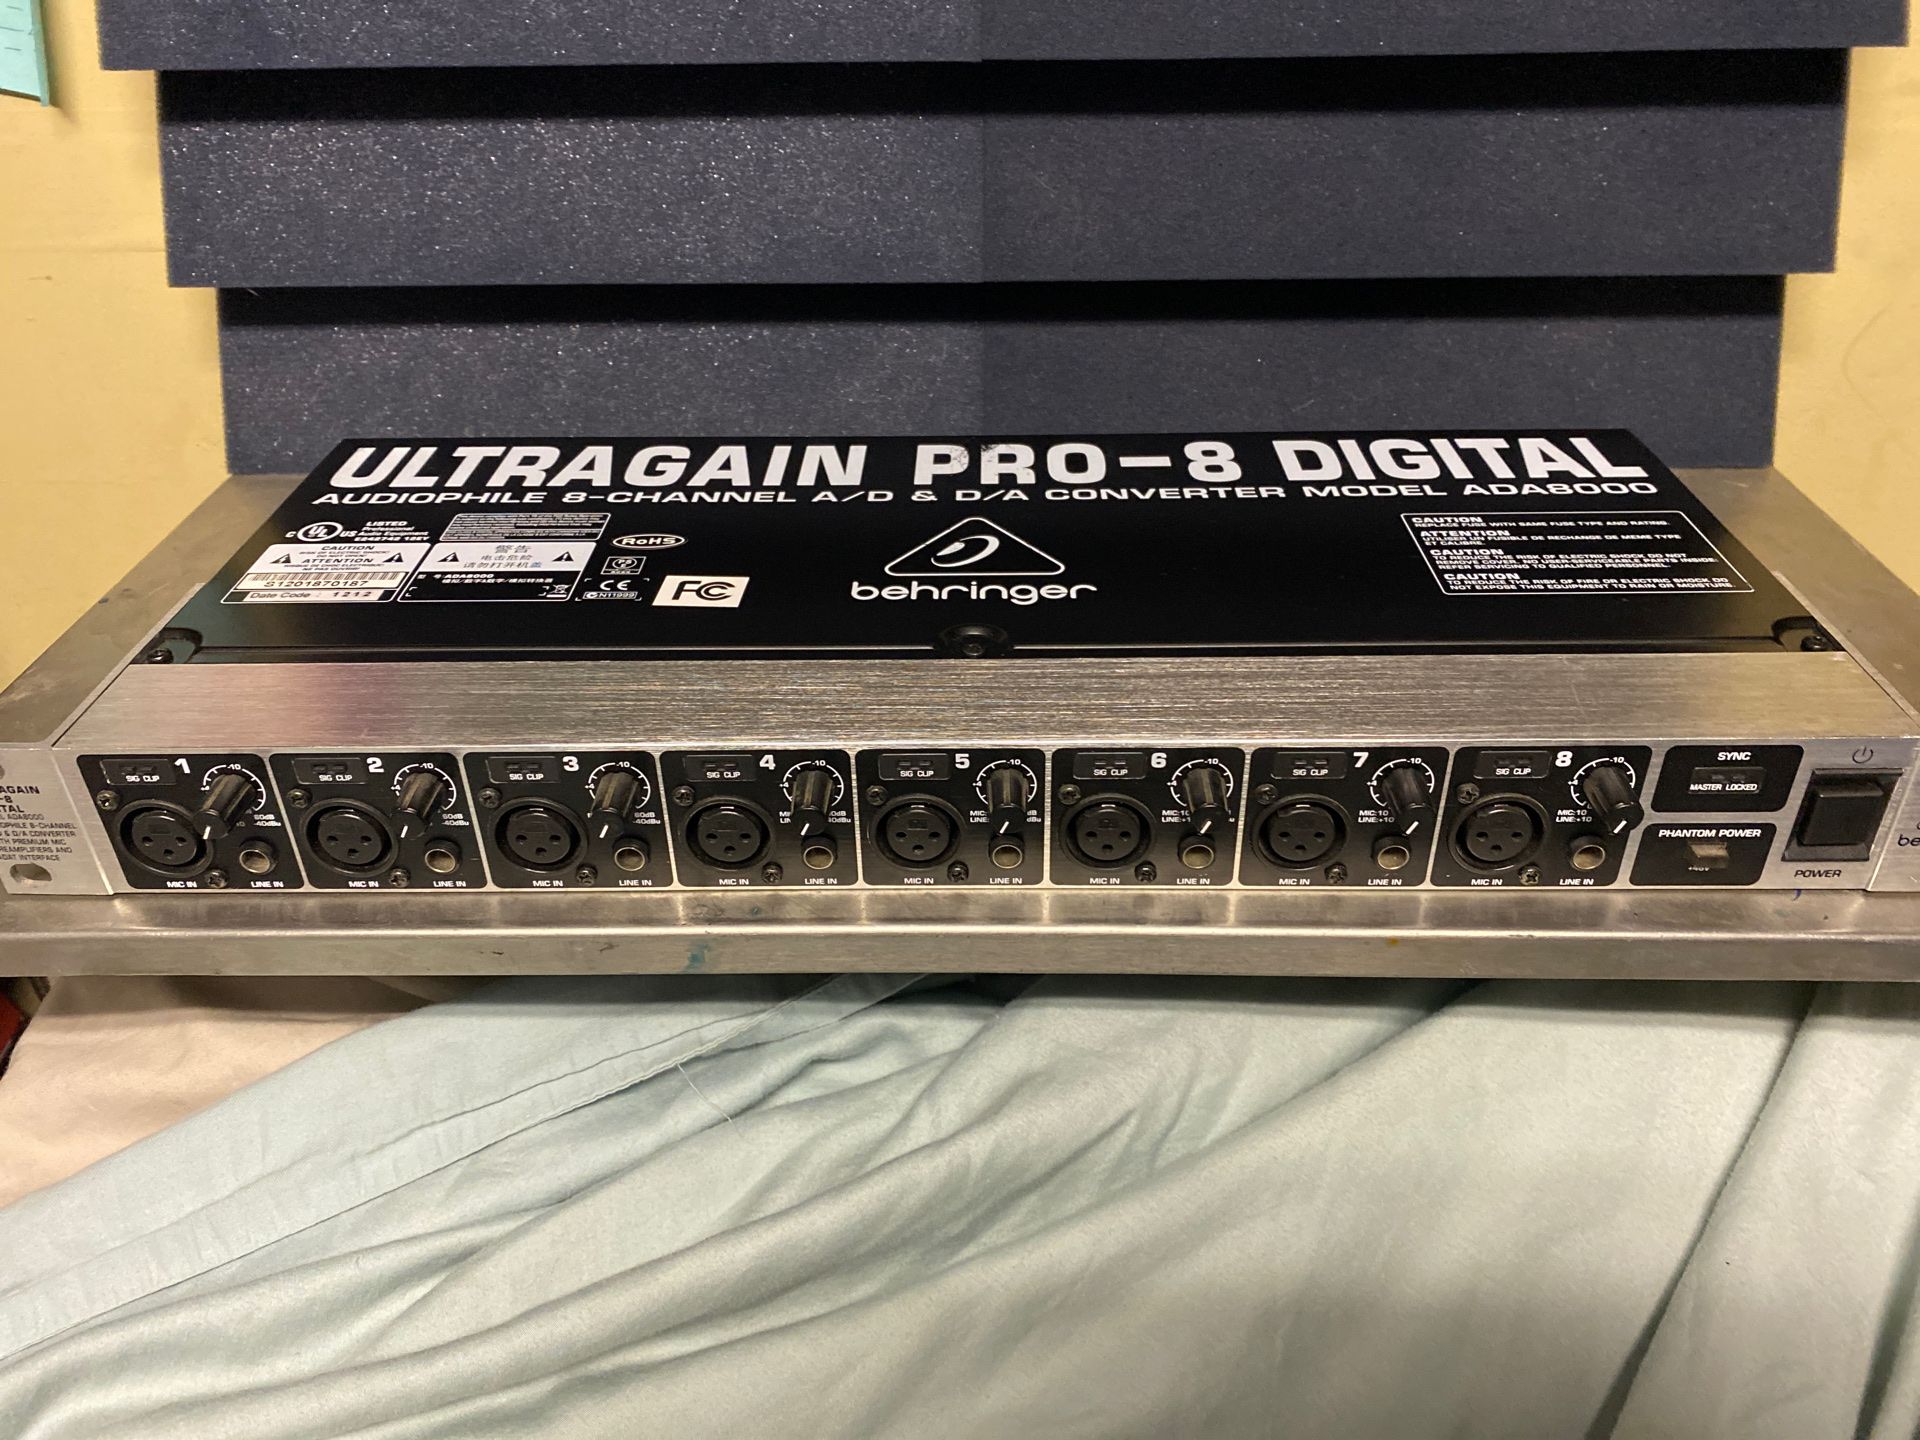 Behringer Ultragain Pro-8 Digital